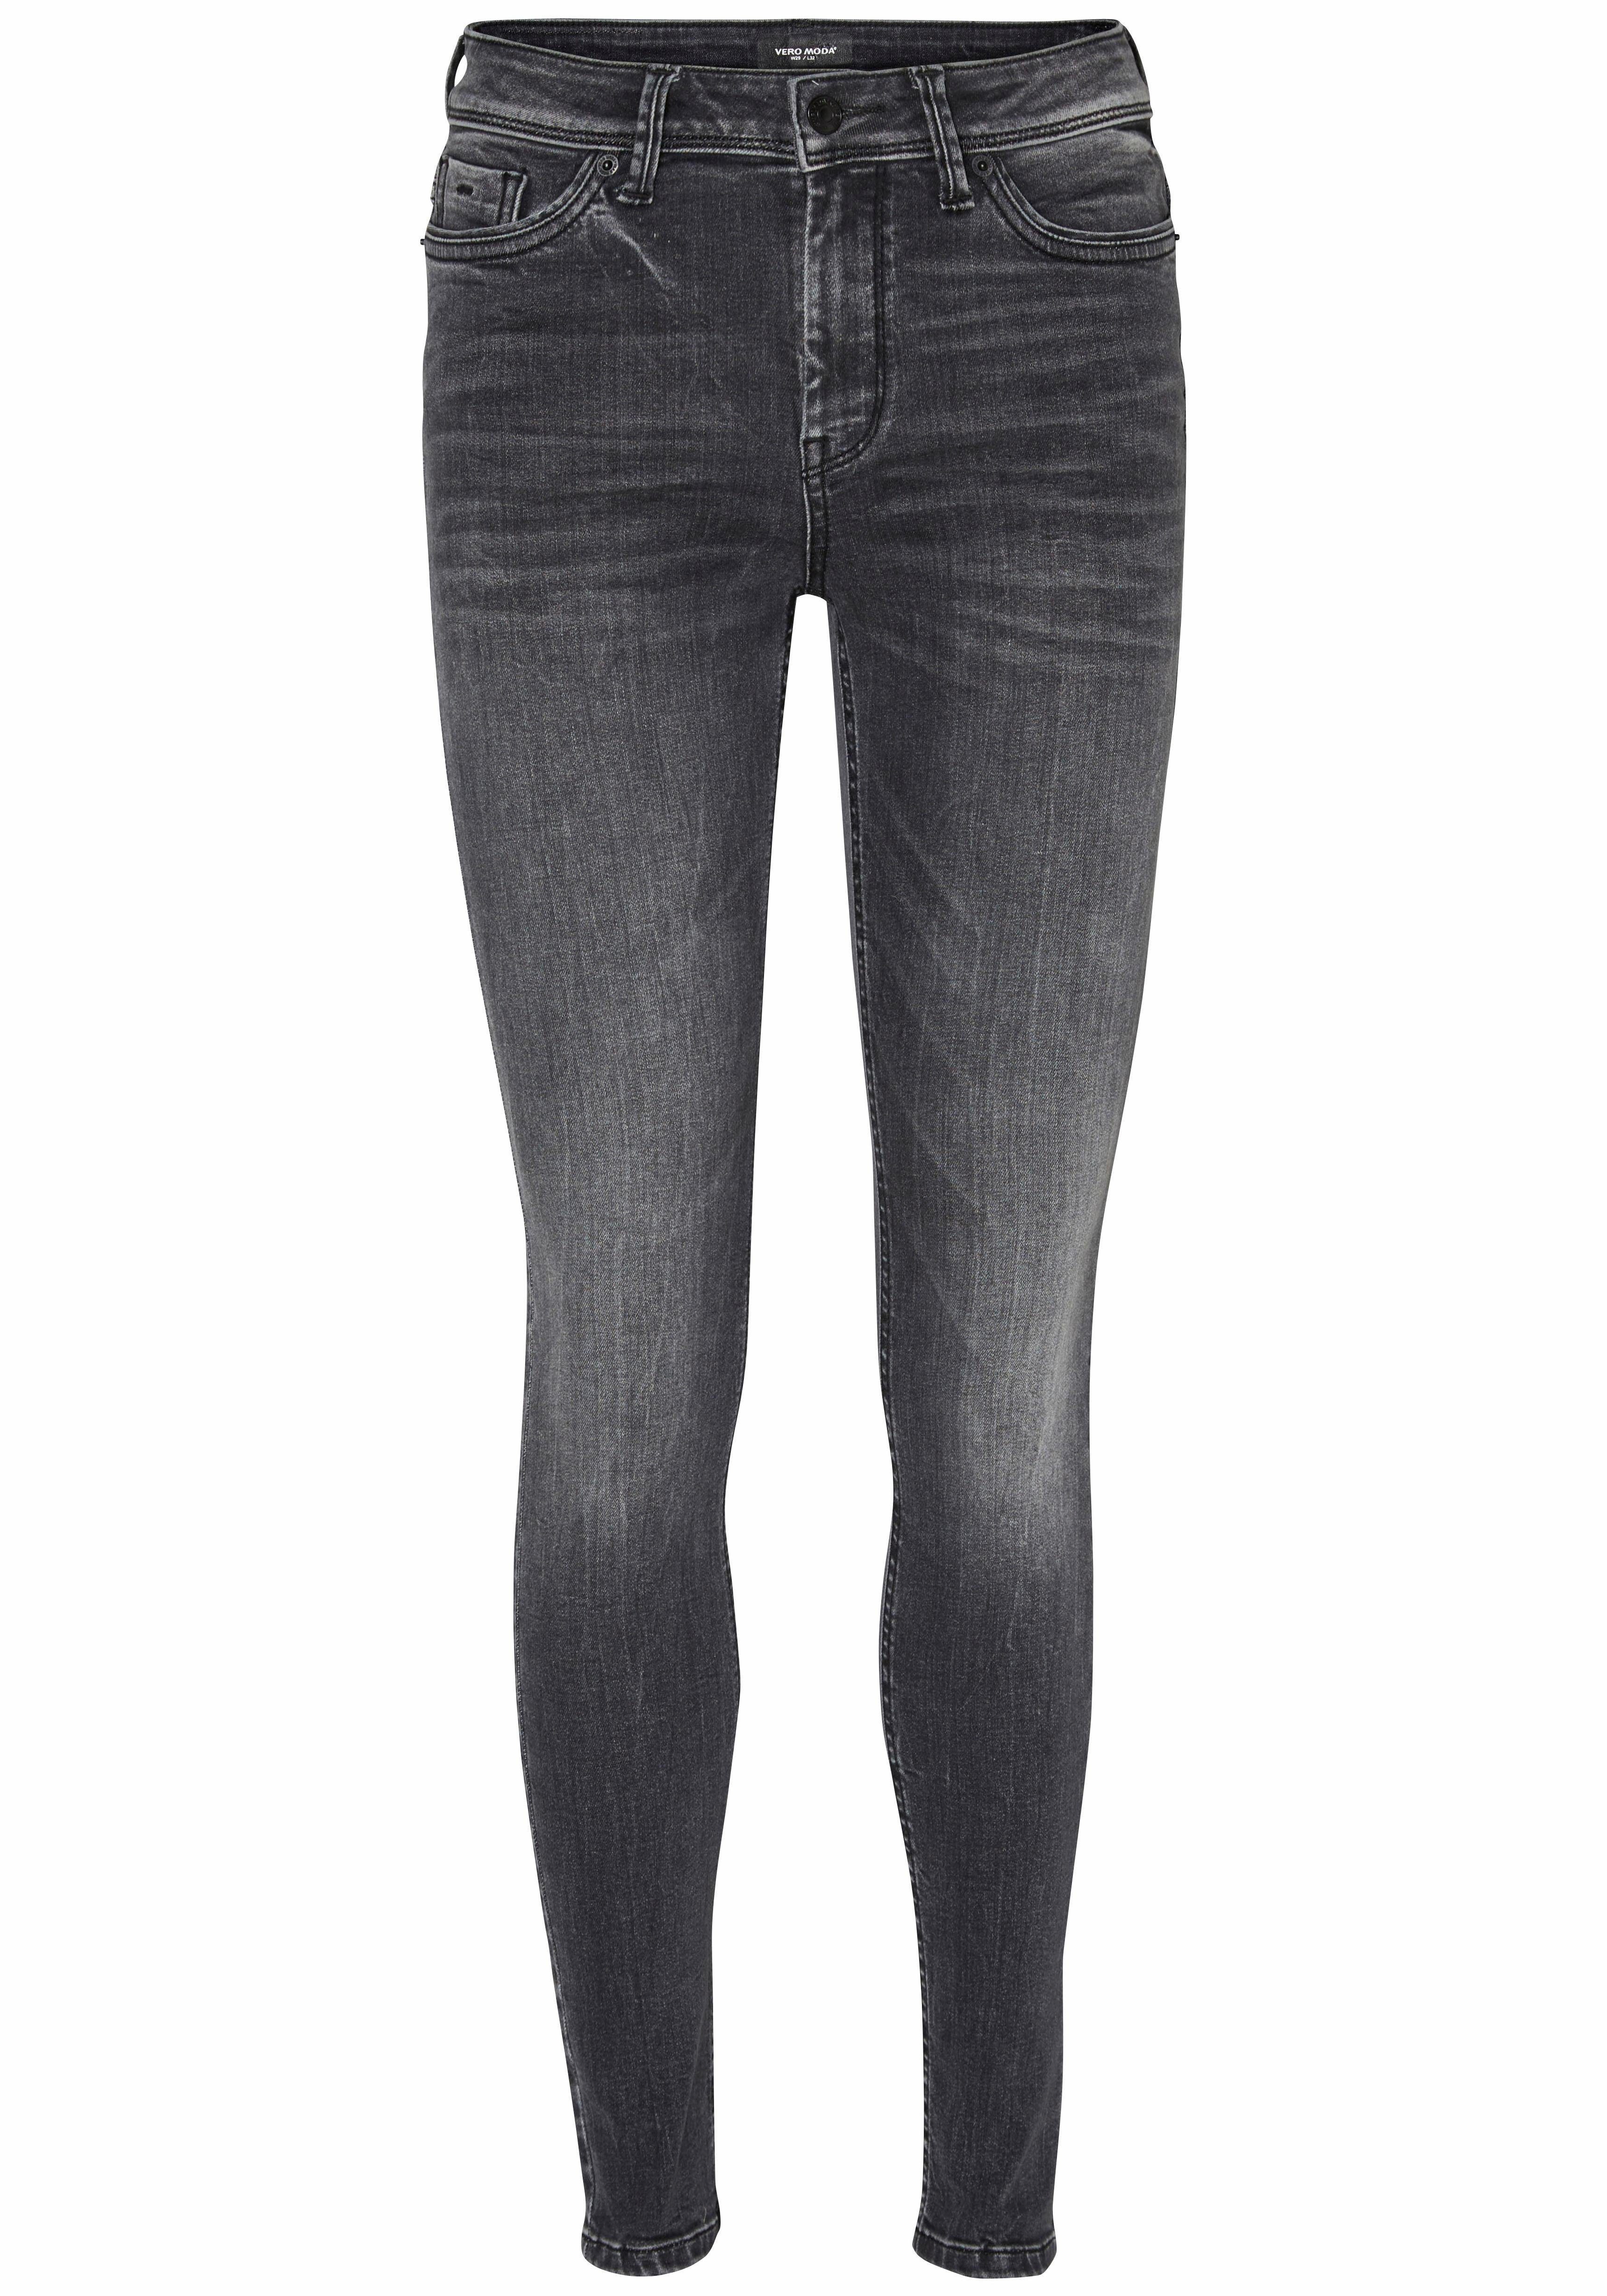 Otto - Vero Moda NU 15% KORTING: Vero Moda Skinny Fit-jeans SEVEN PIPING